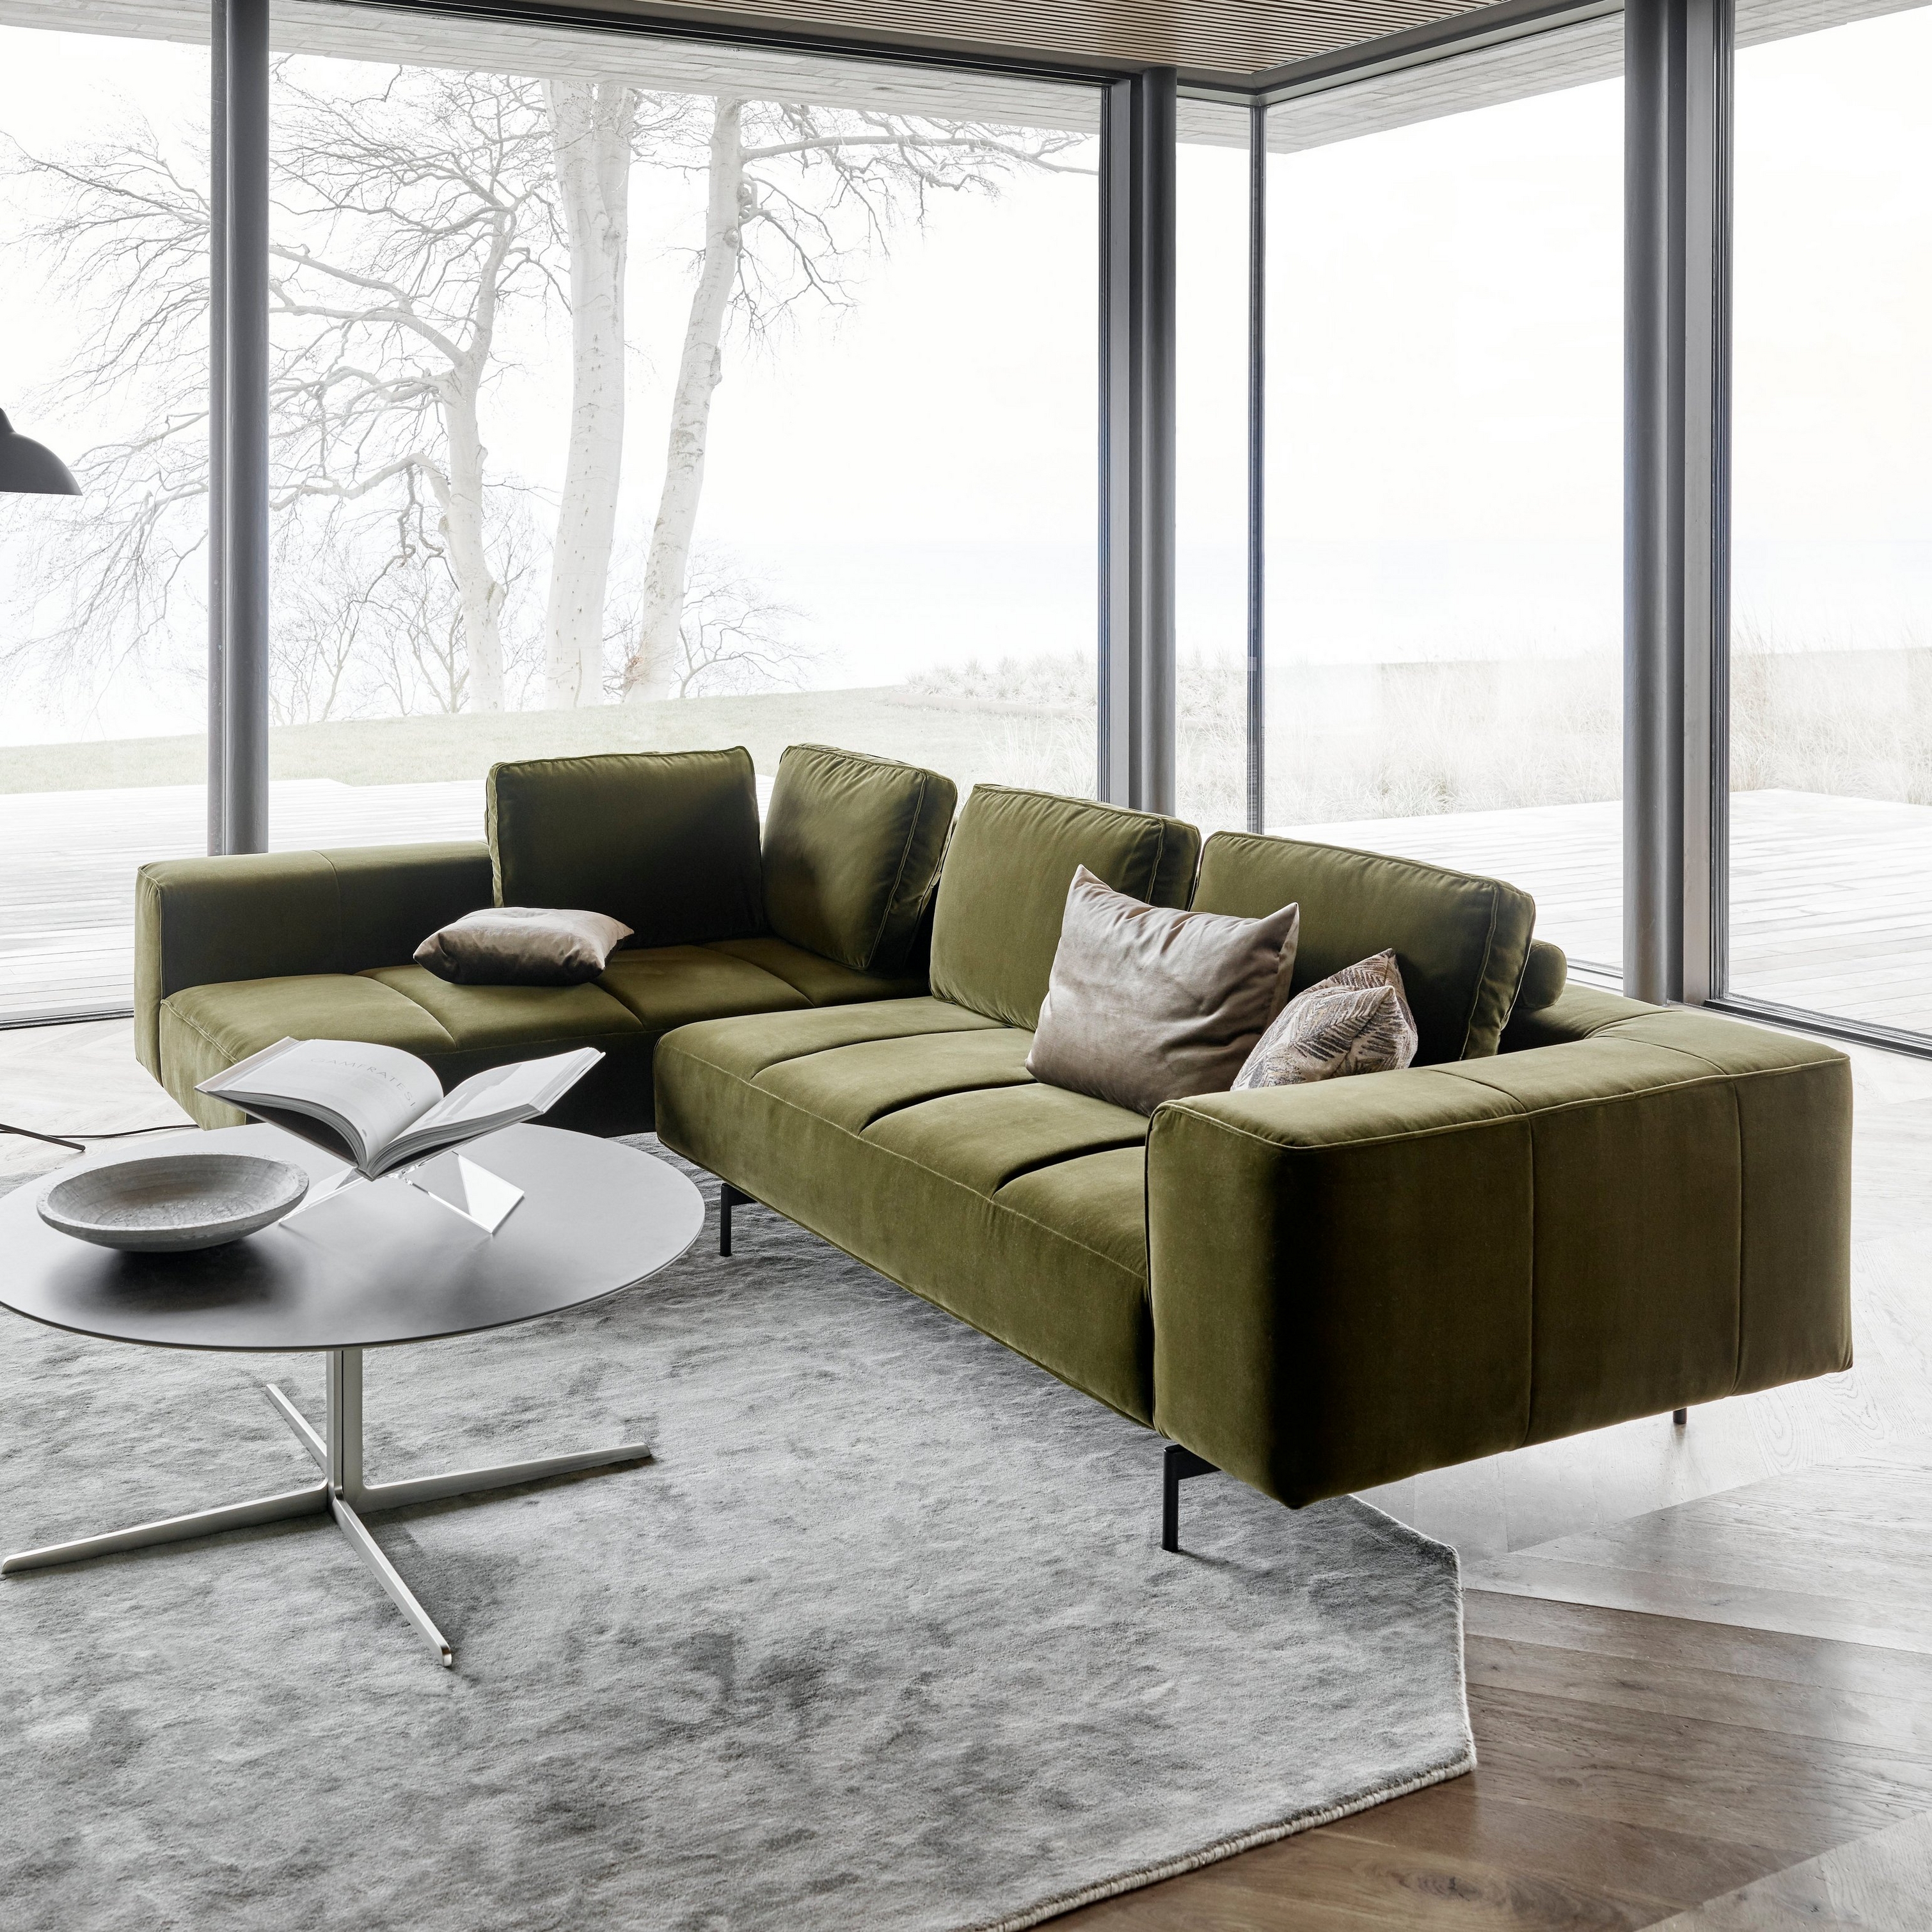 Moderne grøn Amsterdam sofa, sofabord og gulvlampe ved panoramavinduer med udsigt over vandet.